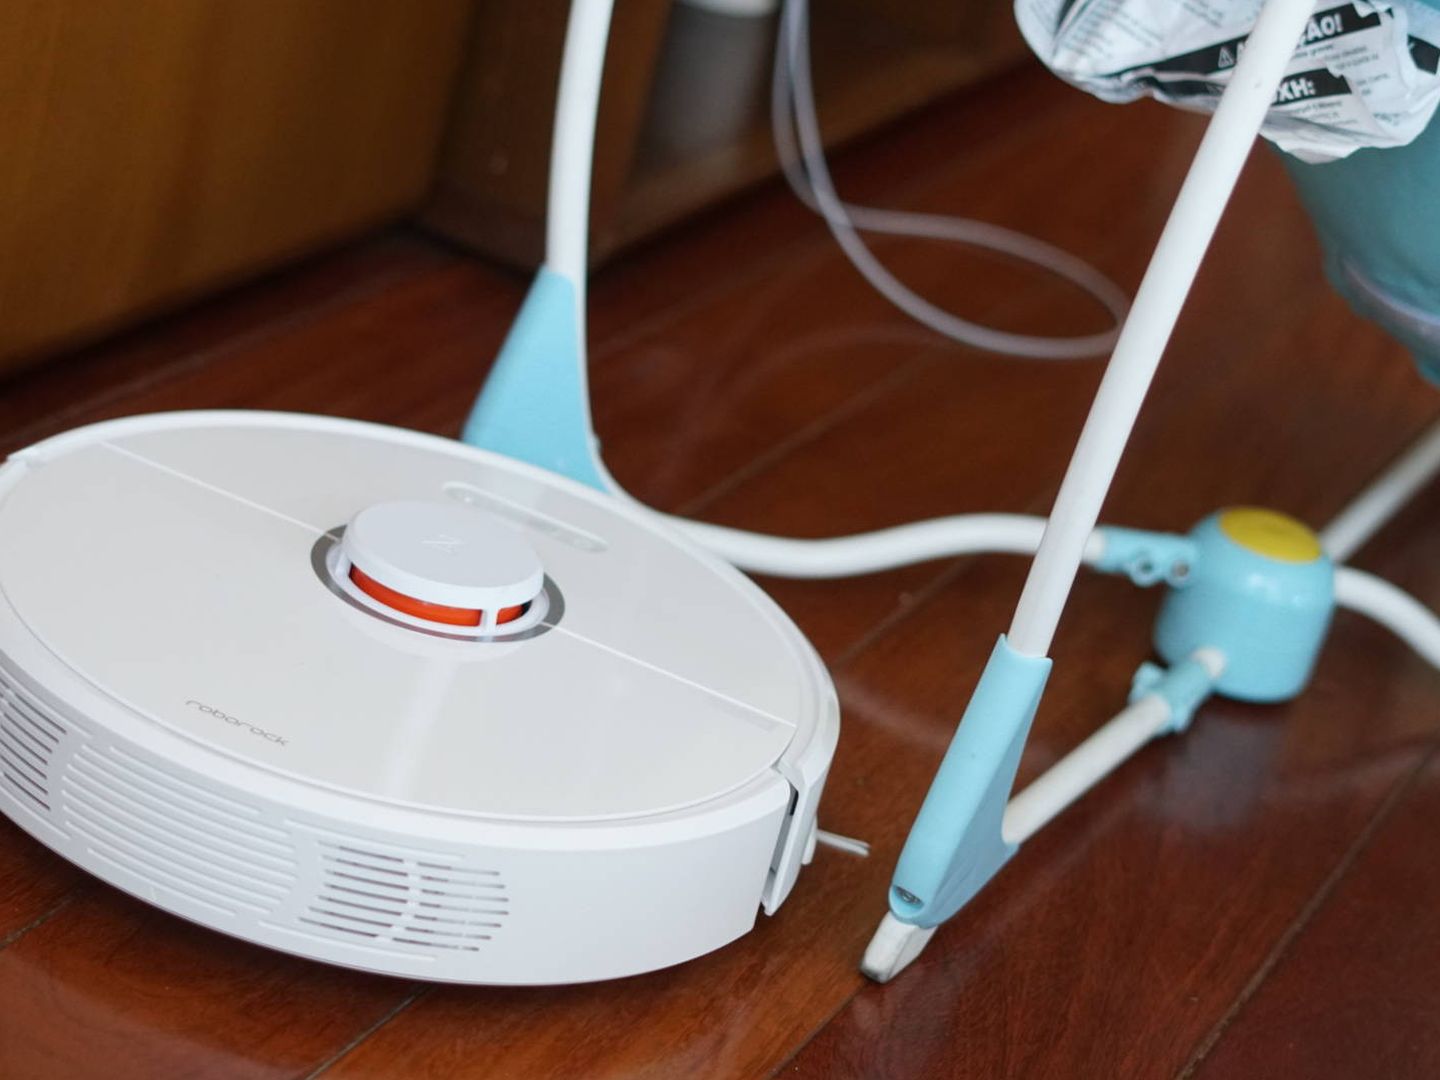 Base de carga Roomba - Original de iRobot - Incluye cable cargador